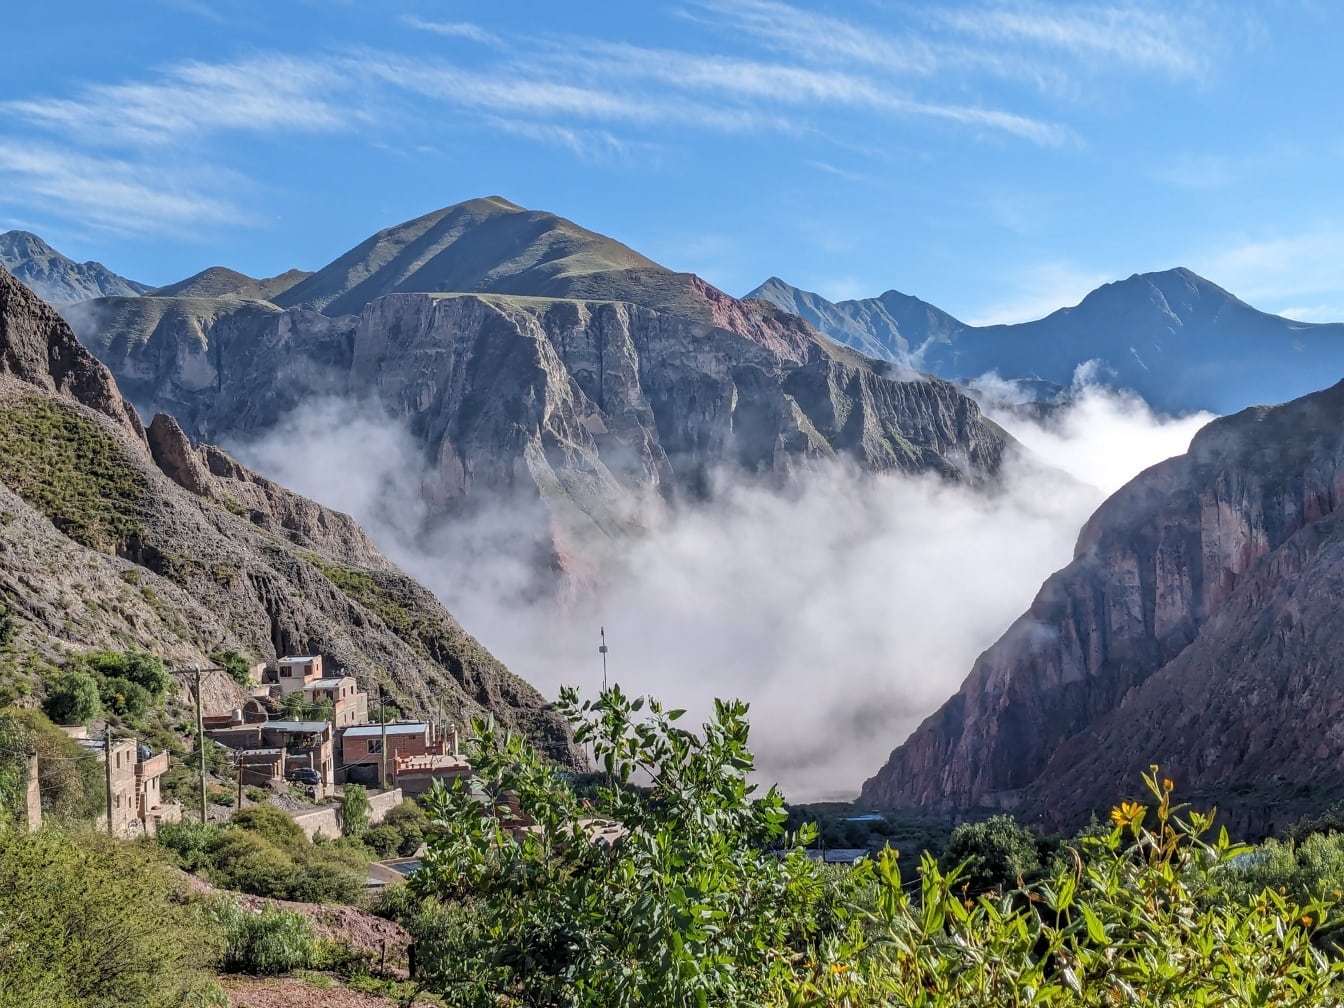 Vadideki kırsal yerleşimi kaplayan yoğun sisli dağ manzarası